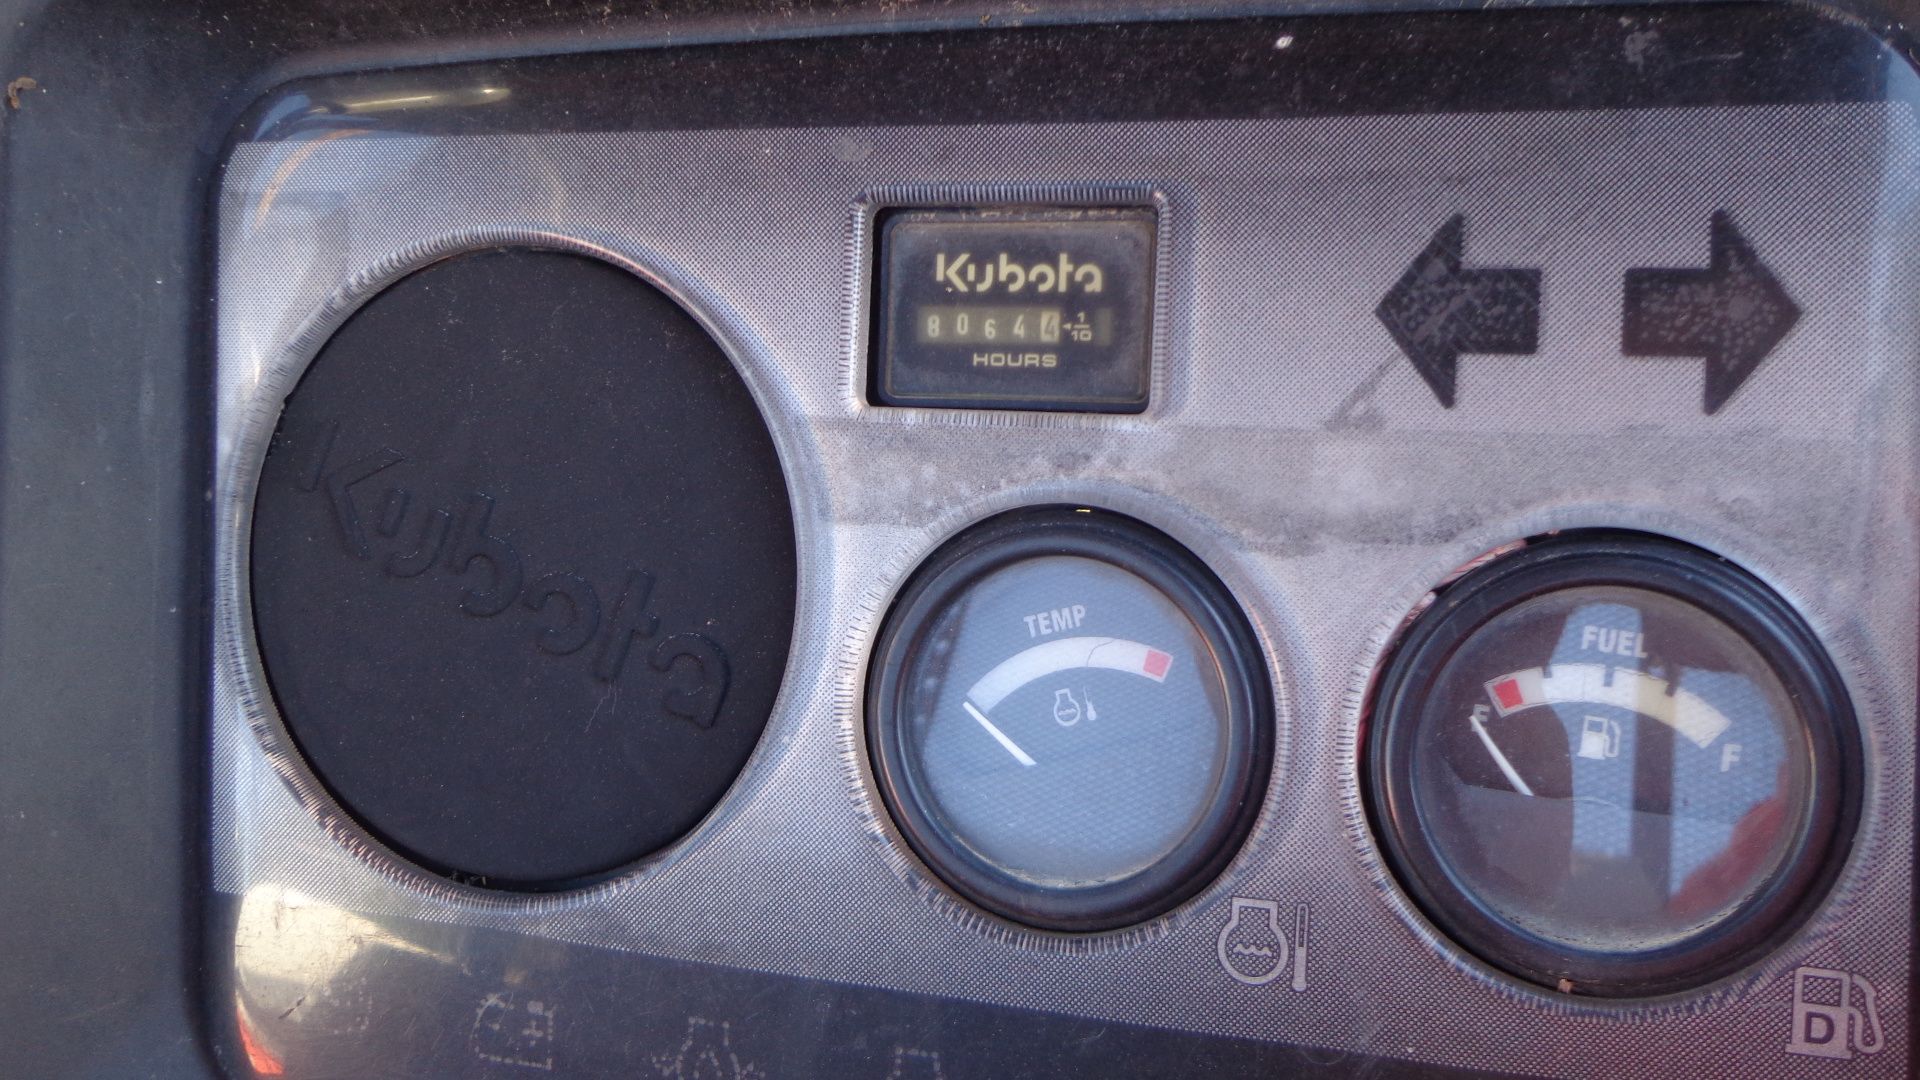 2007 Kubota Utility Vehicle, Model K-RTV-900A, S/N 41967, Diesel Powered, 8,064 Hours - Image 6 of 6